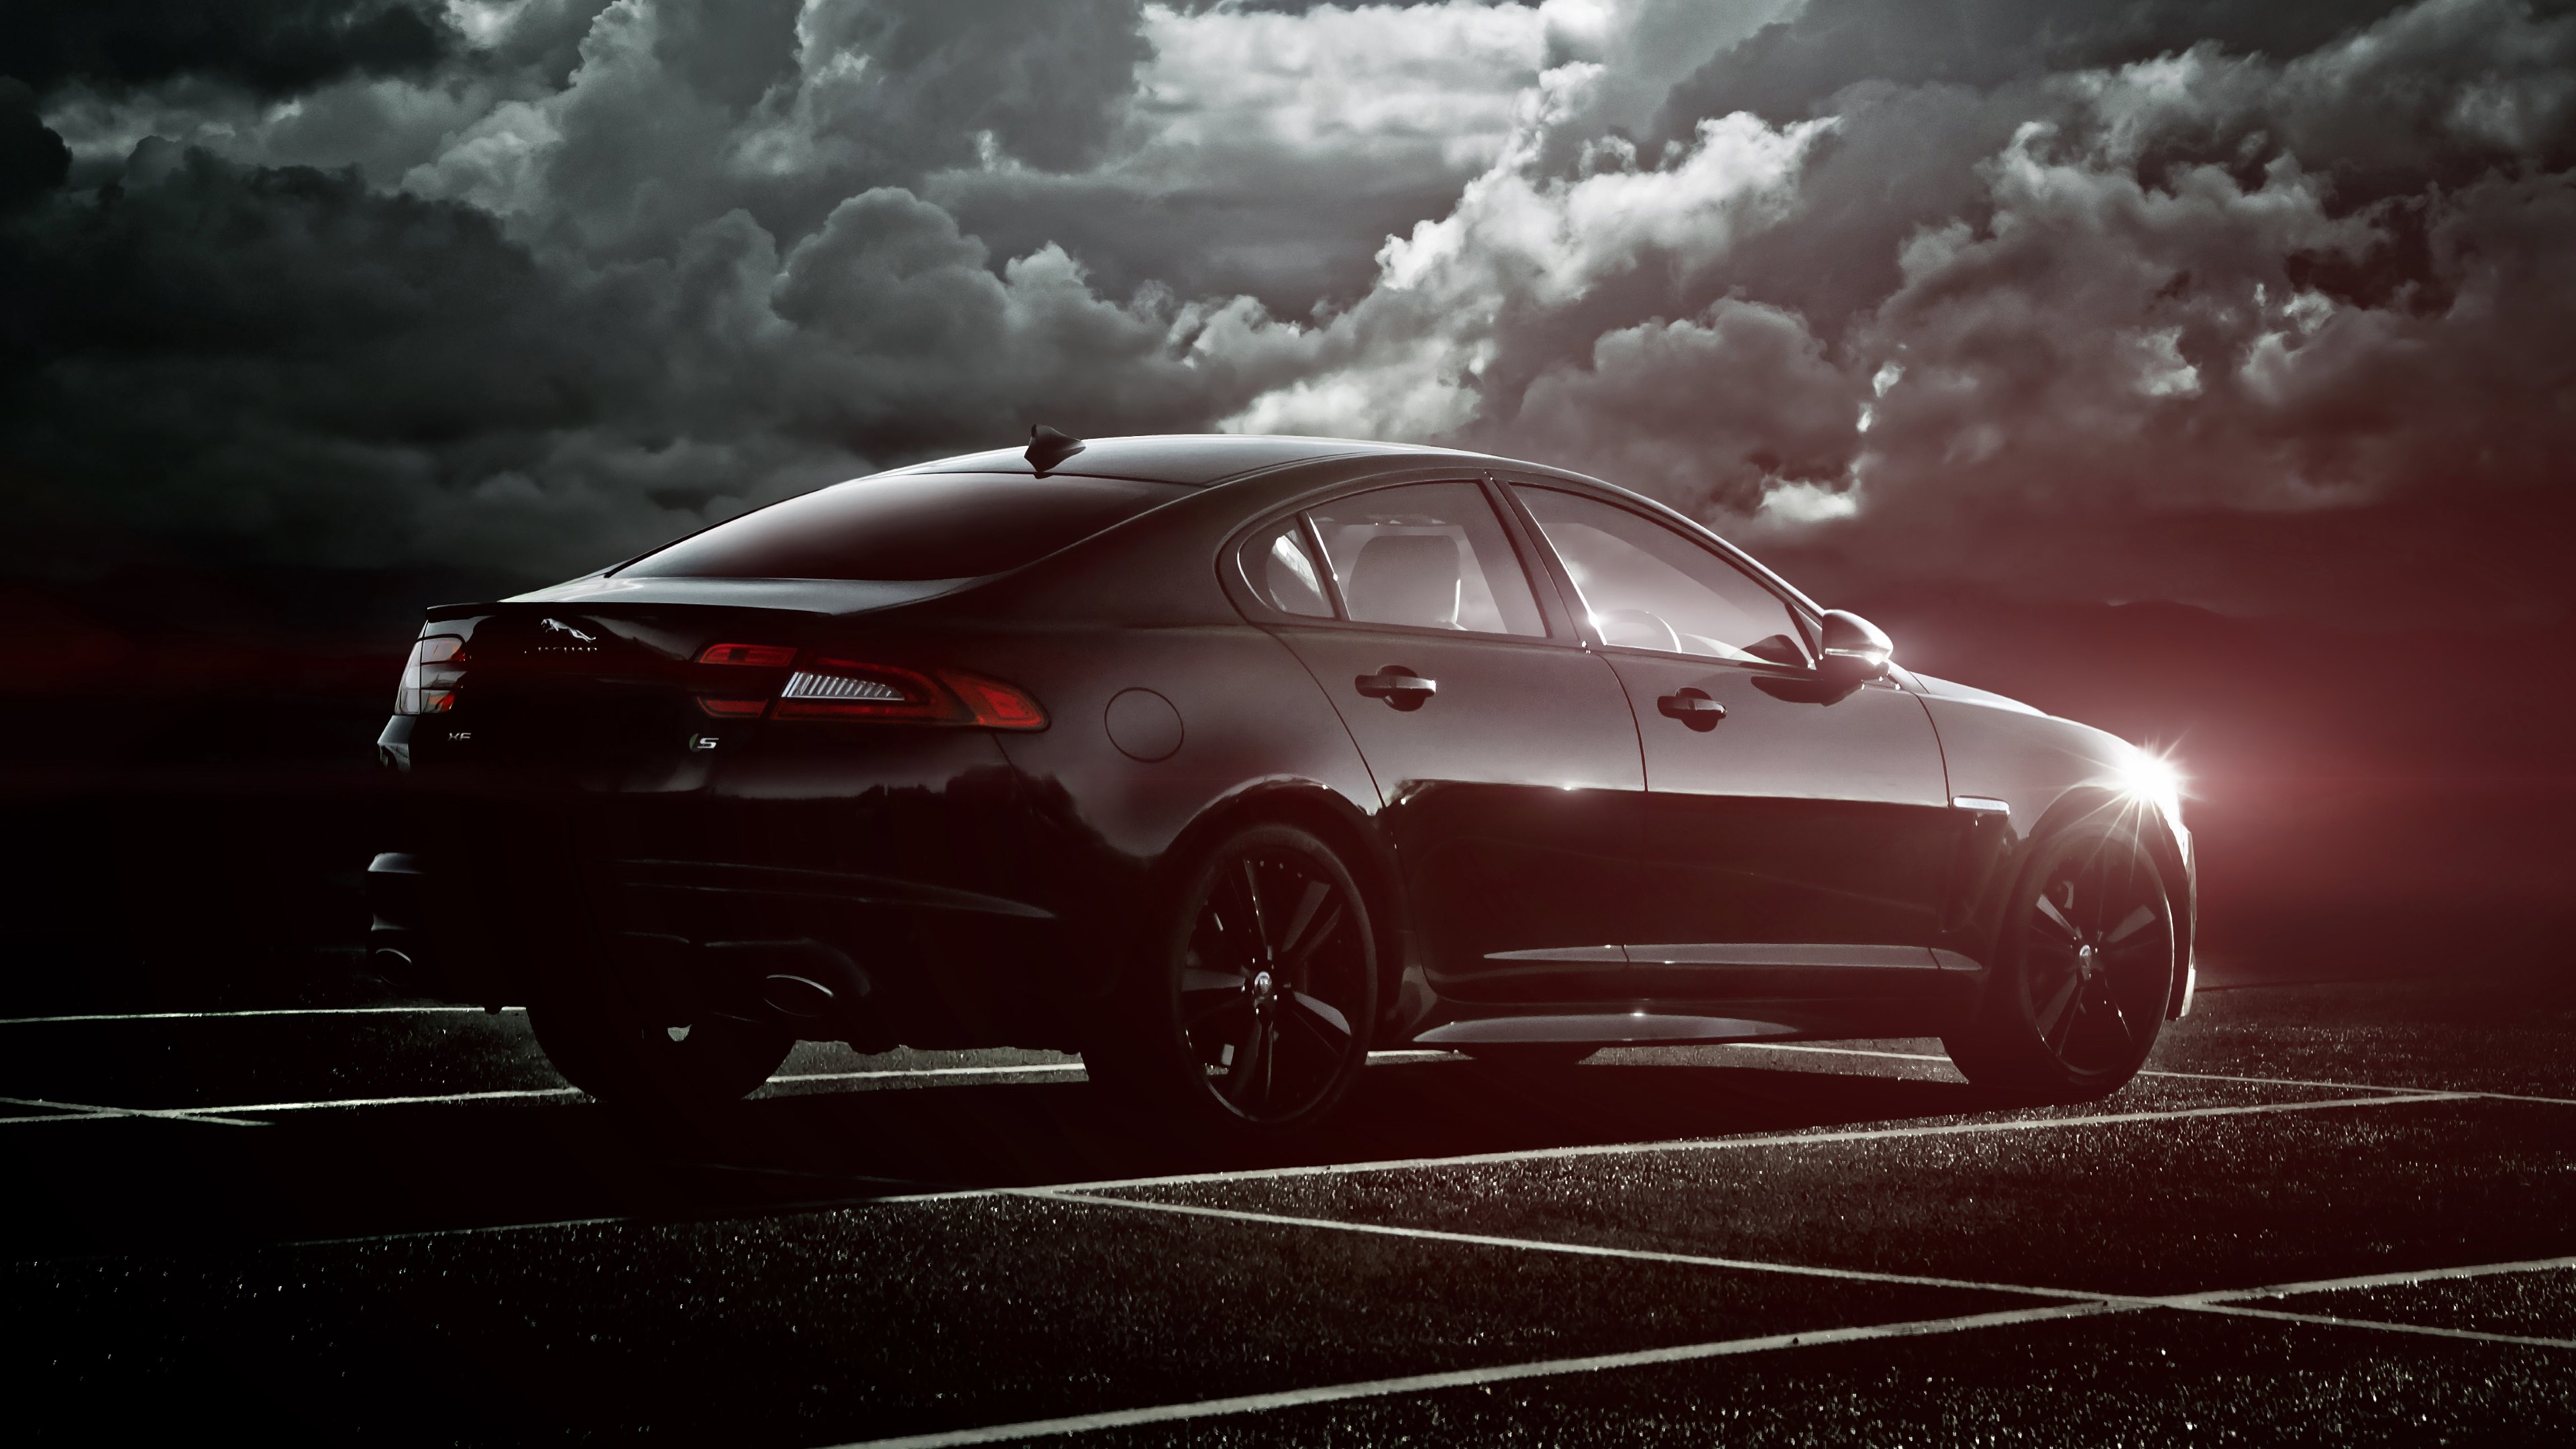 jaguar hd wallpapers 1080p,land vehicle,vehicle,car,luxury vehicle,automotive design